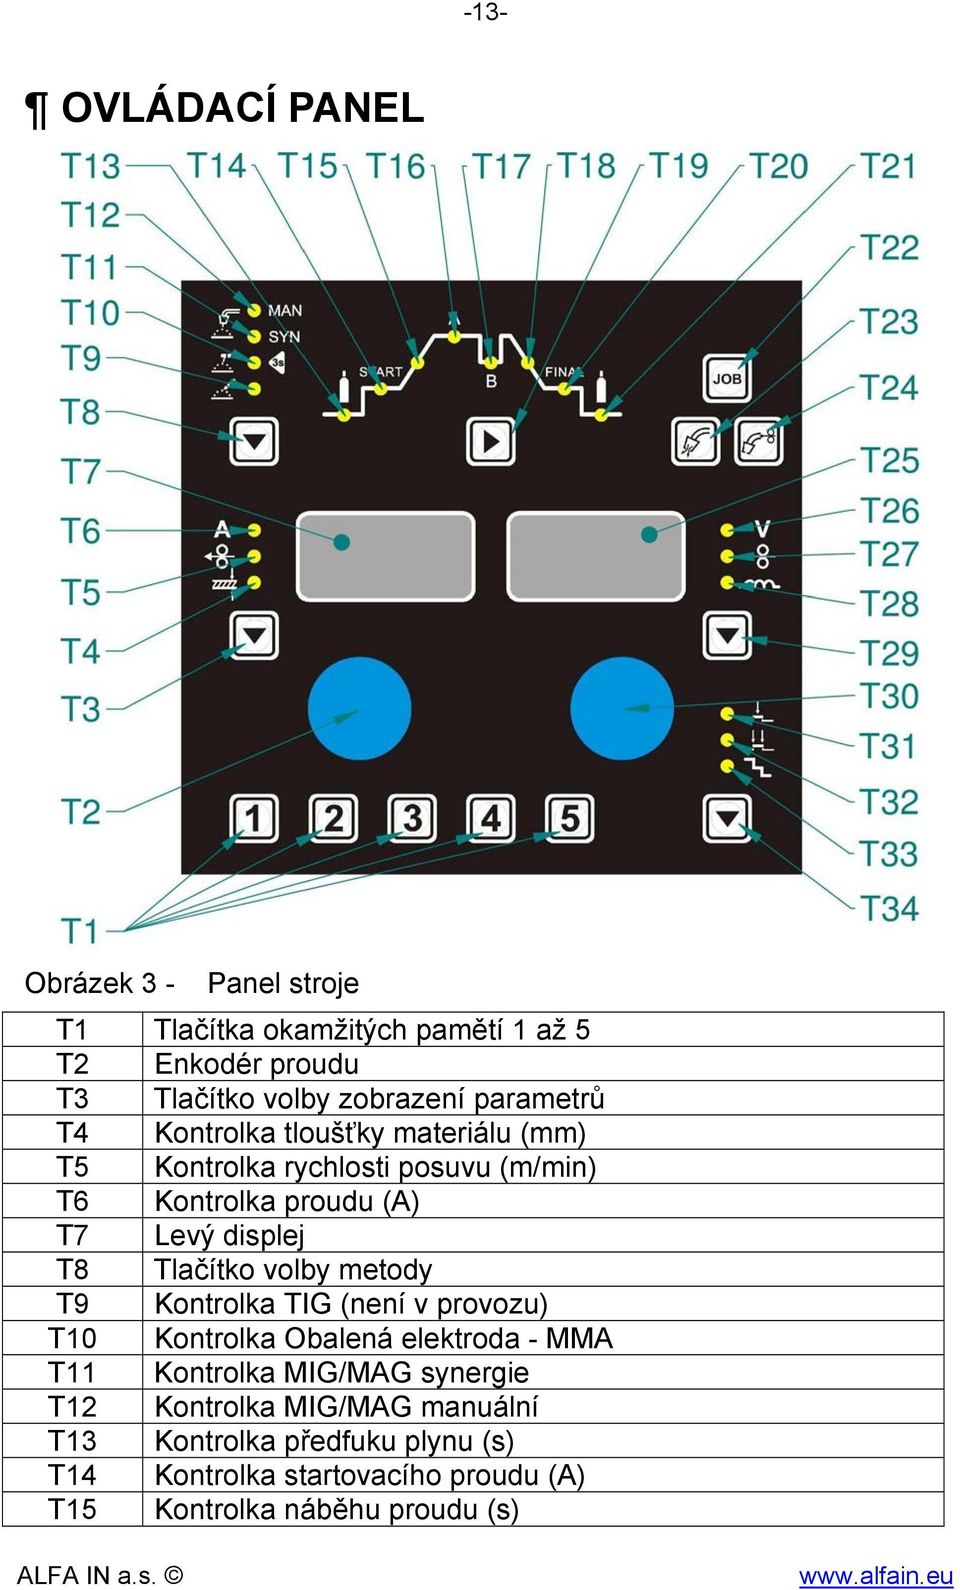 Tlačítko volby metody T9 Kontrolka TIG (není v provozu) T10 Kontrolka Obalená elektroda - MMA T11 Kontrolka MIG/MAG synergie T12